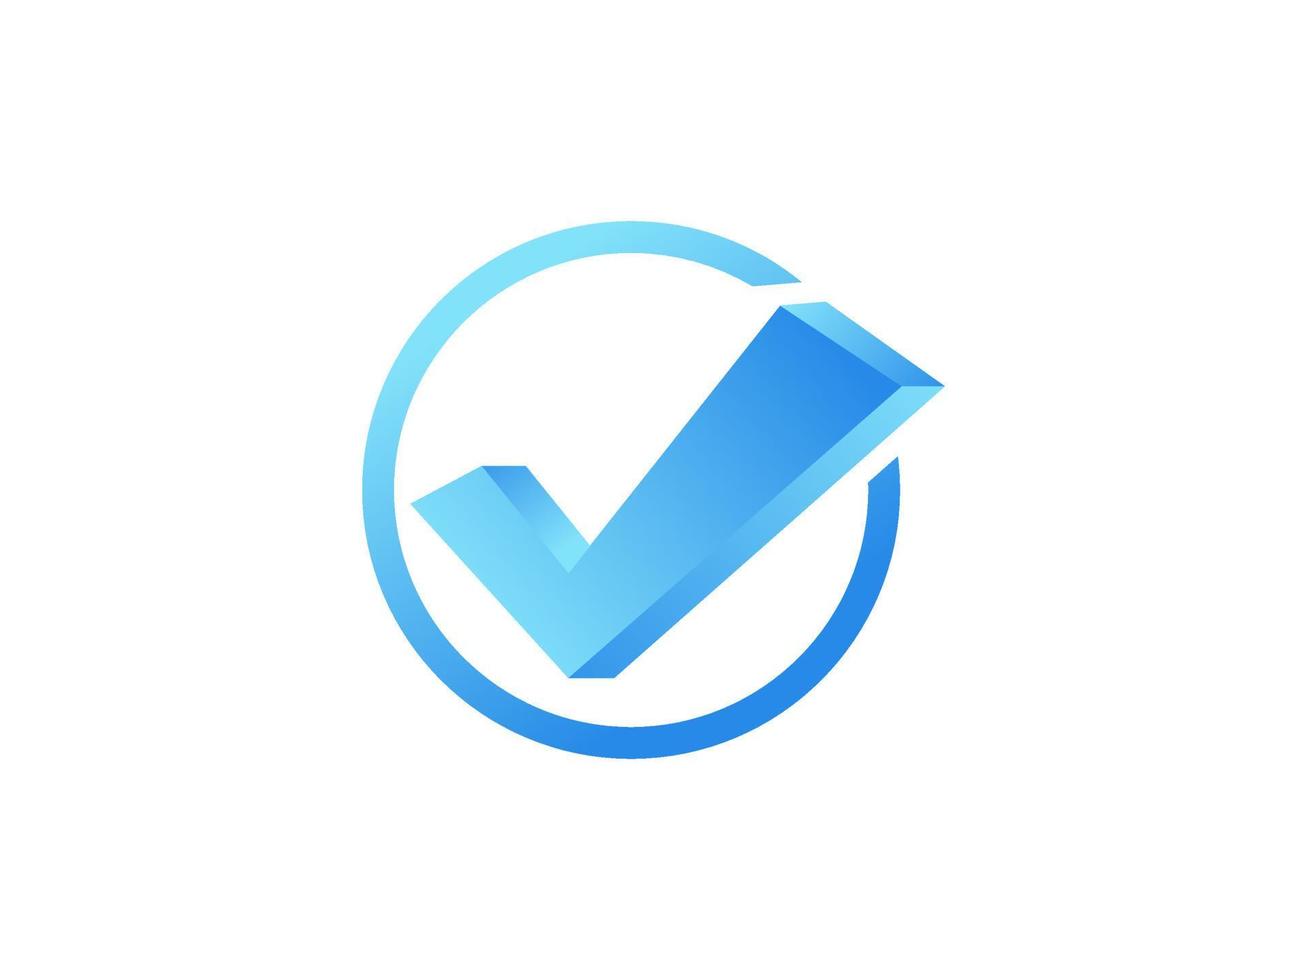 icona moderna approvata. segno di spunta freccia bianca con etichetta adesiva stella scintillante a forma di cerchio blu isolata su sfondo bianco. elementi di design di icone vettoriali piatte per modelli web.